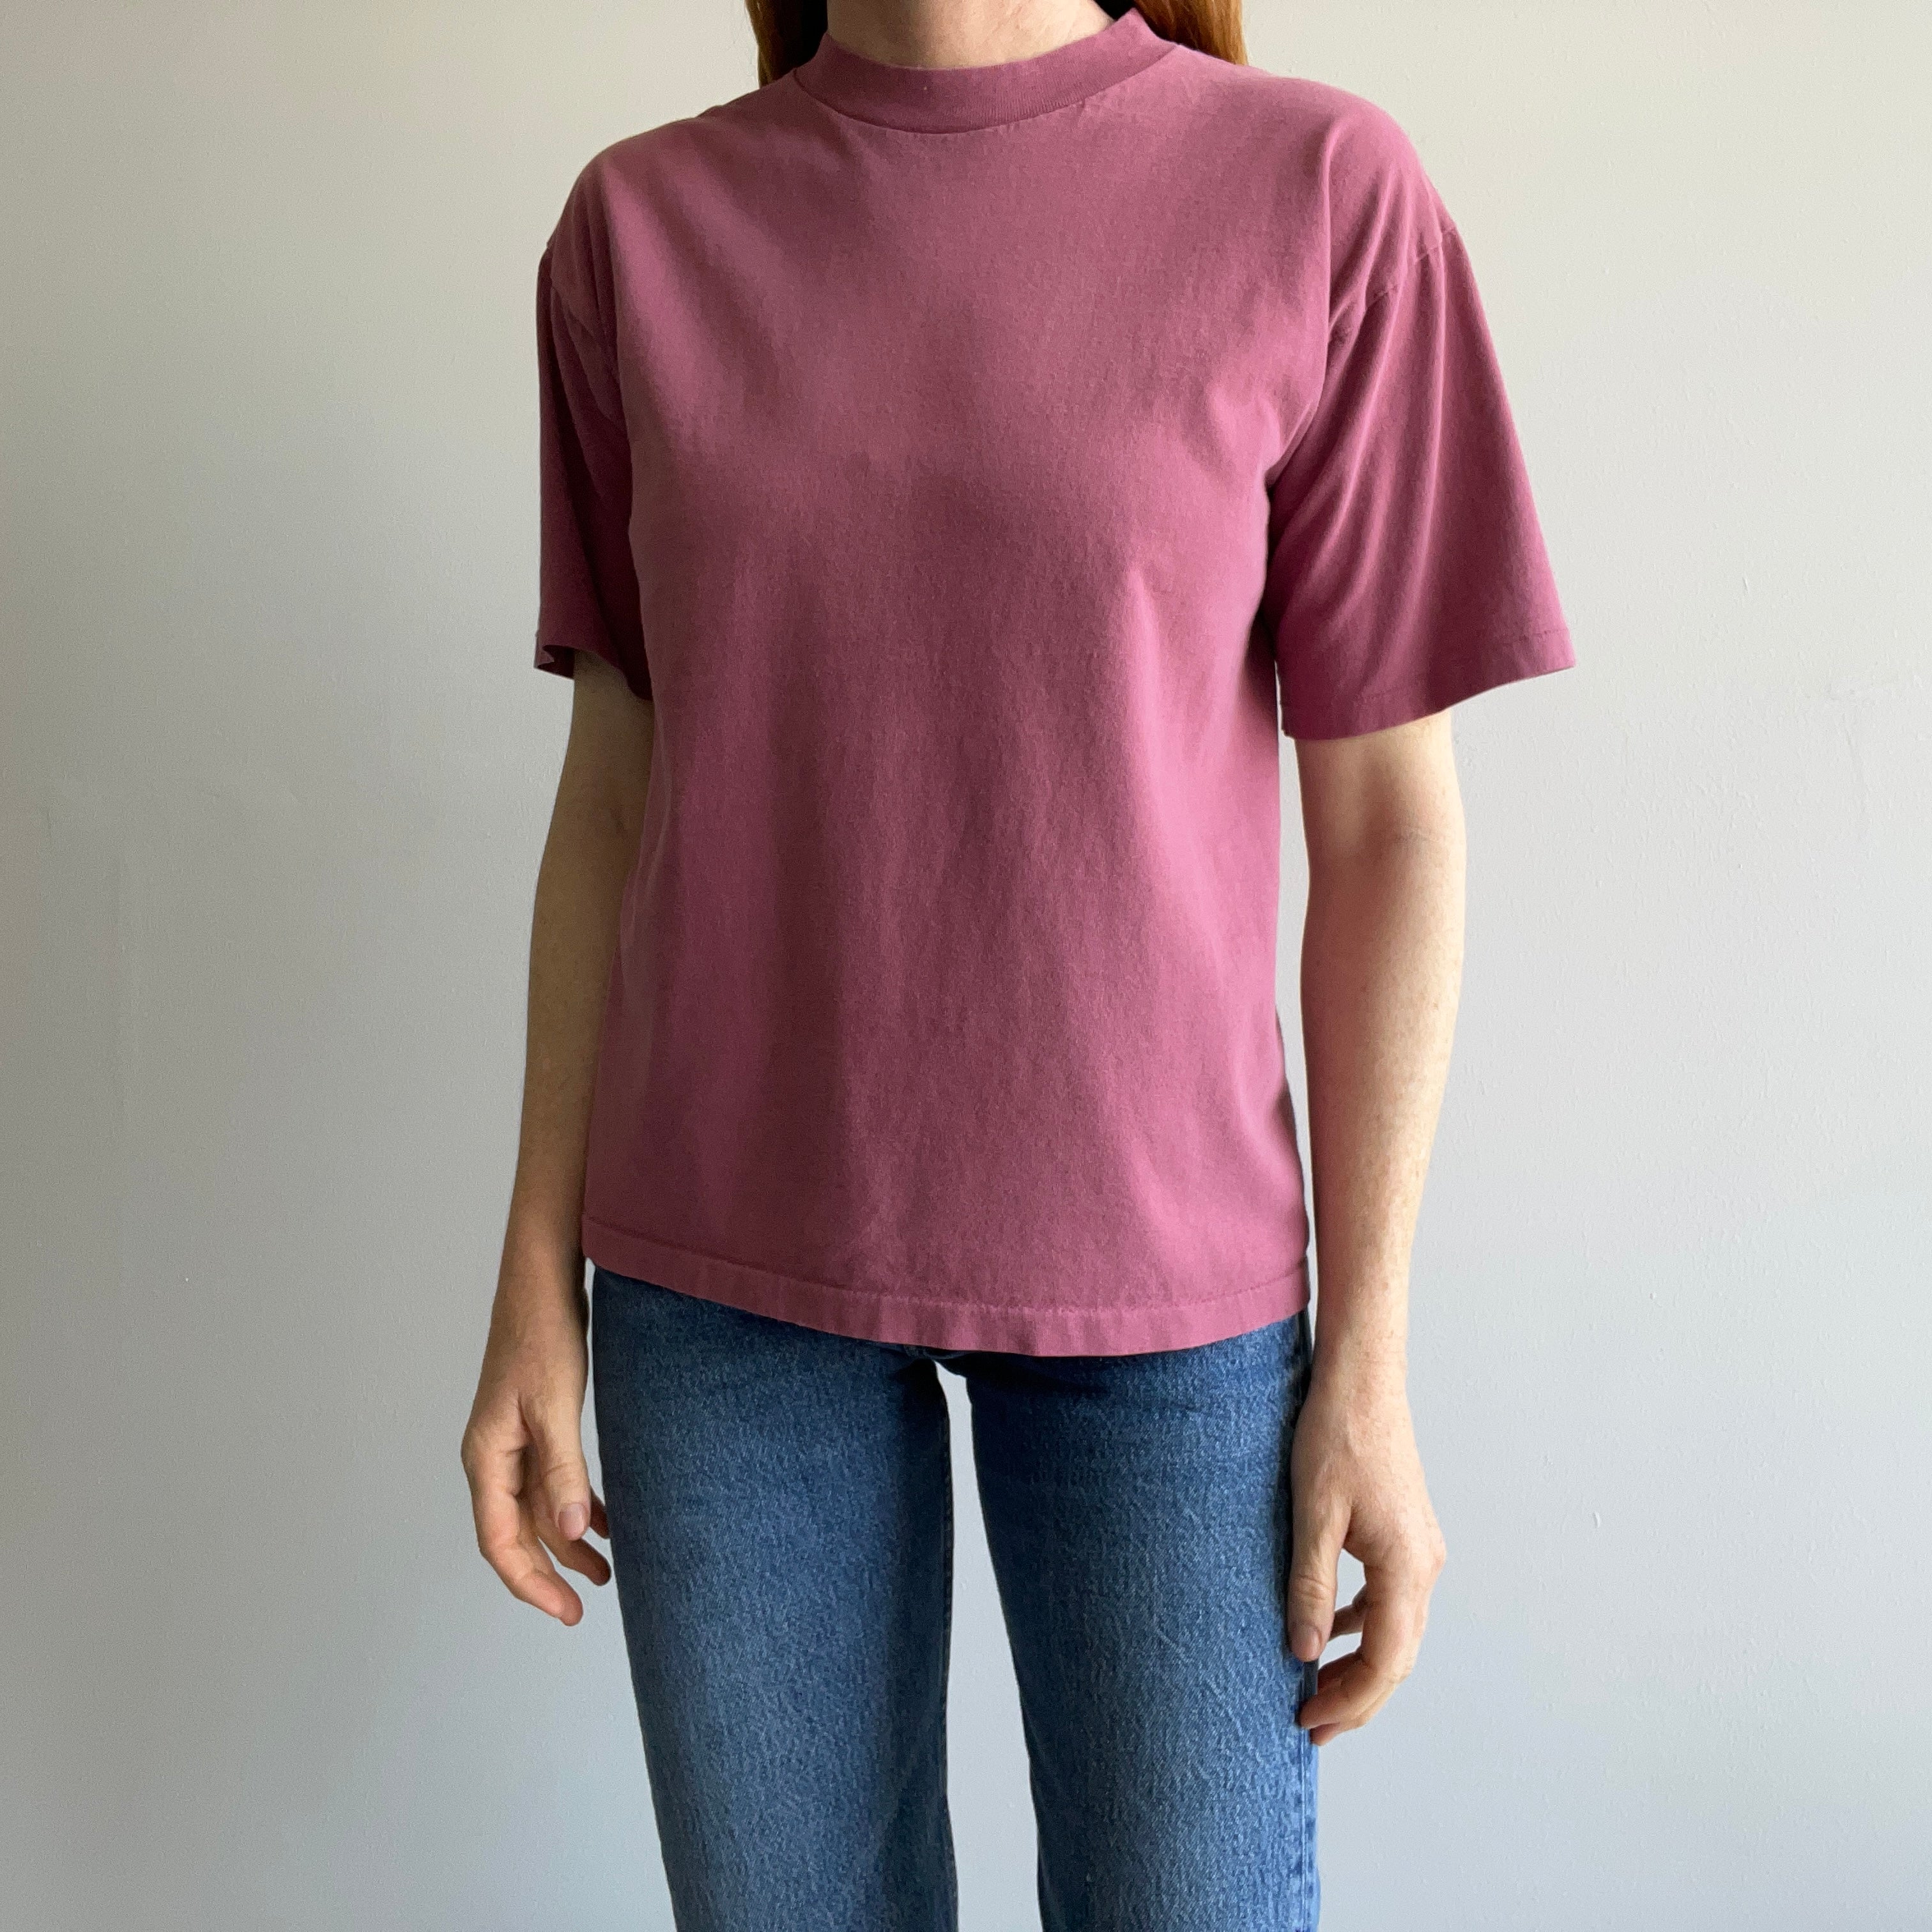 1980s Dusty Mauve Pink Cotton T-Shirt